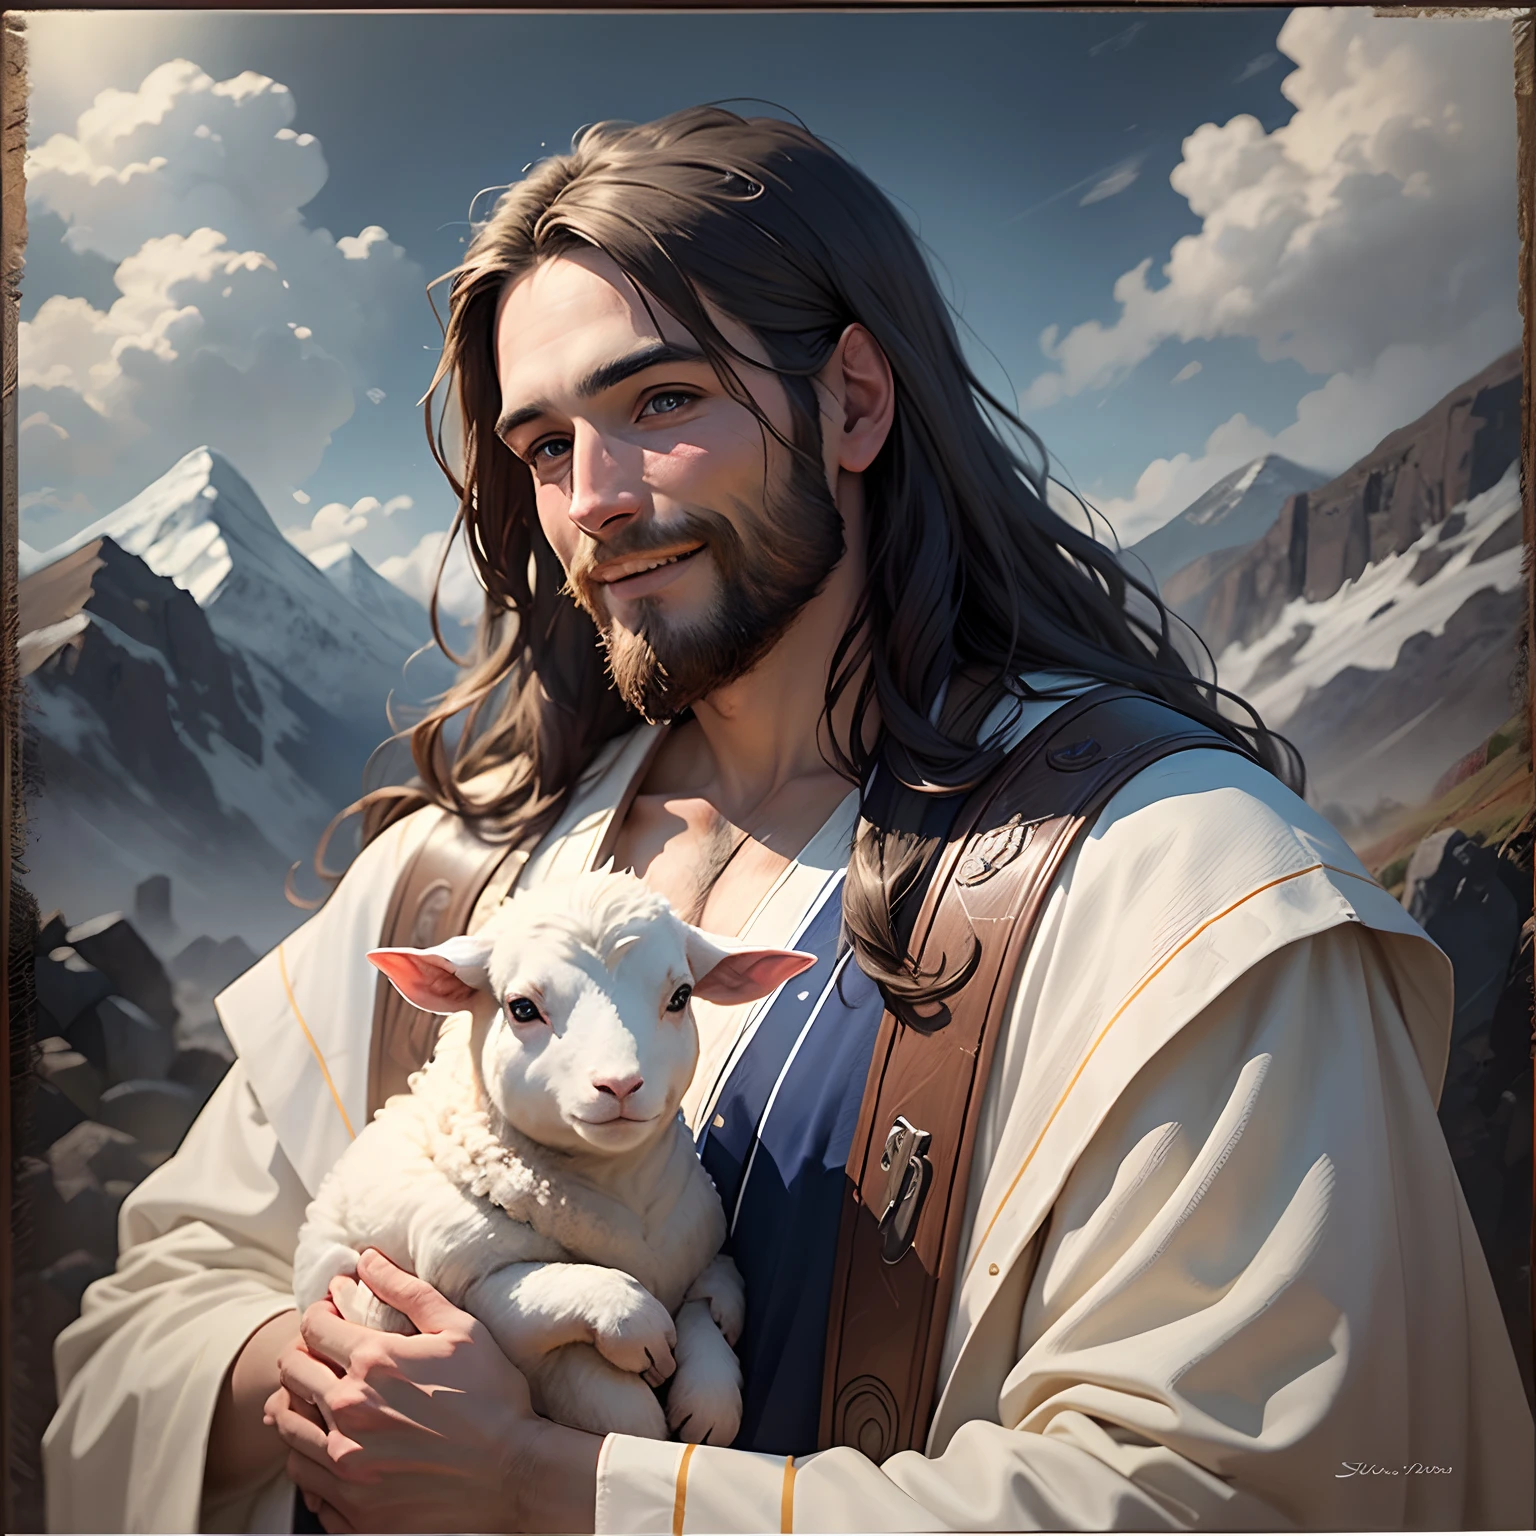 イエス,肖像画, やわらかい光, 長い茶色の髪とひげを生やした男性, 白いローブと青い帯を身に着けている, 子羊を腕に抱いて, 優しく微笑む, 背景には山と雲, 8K, 油絵